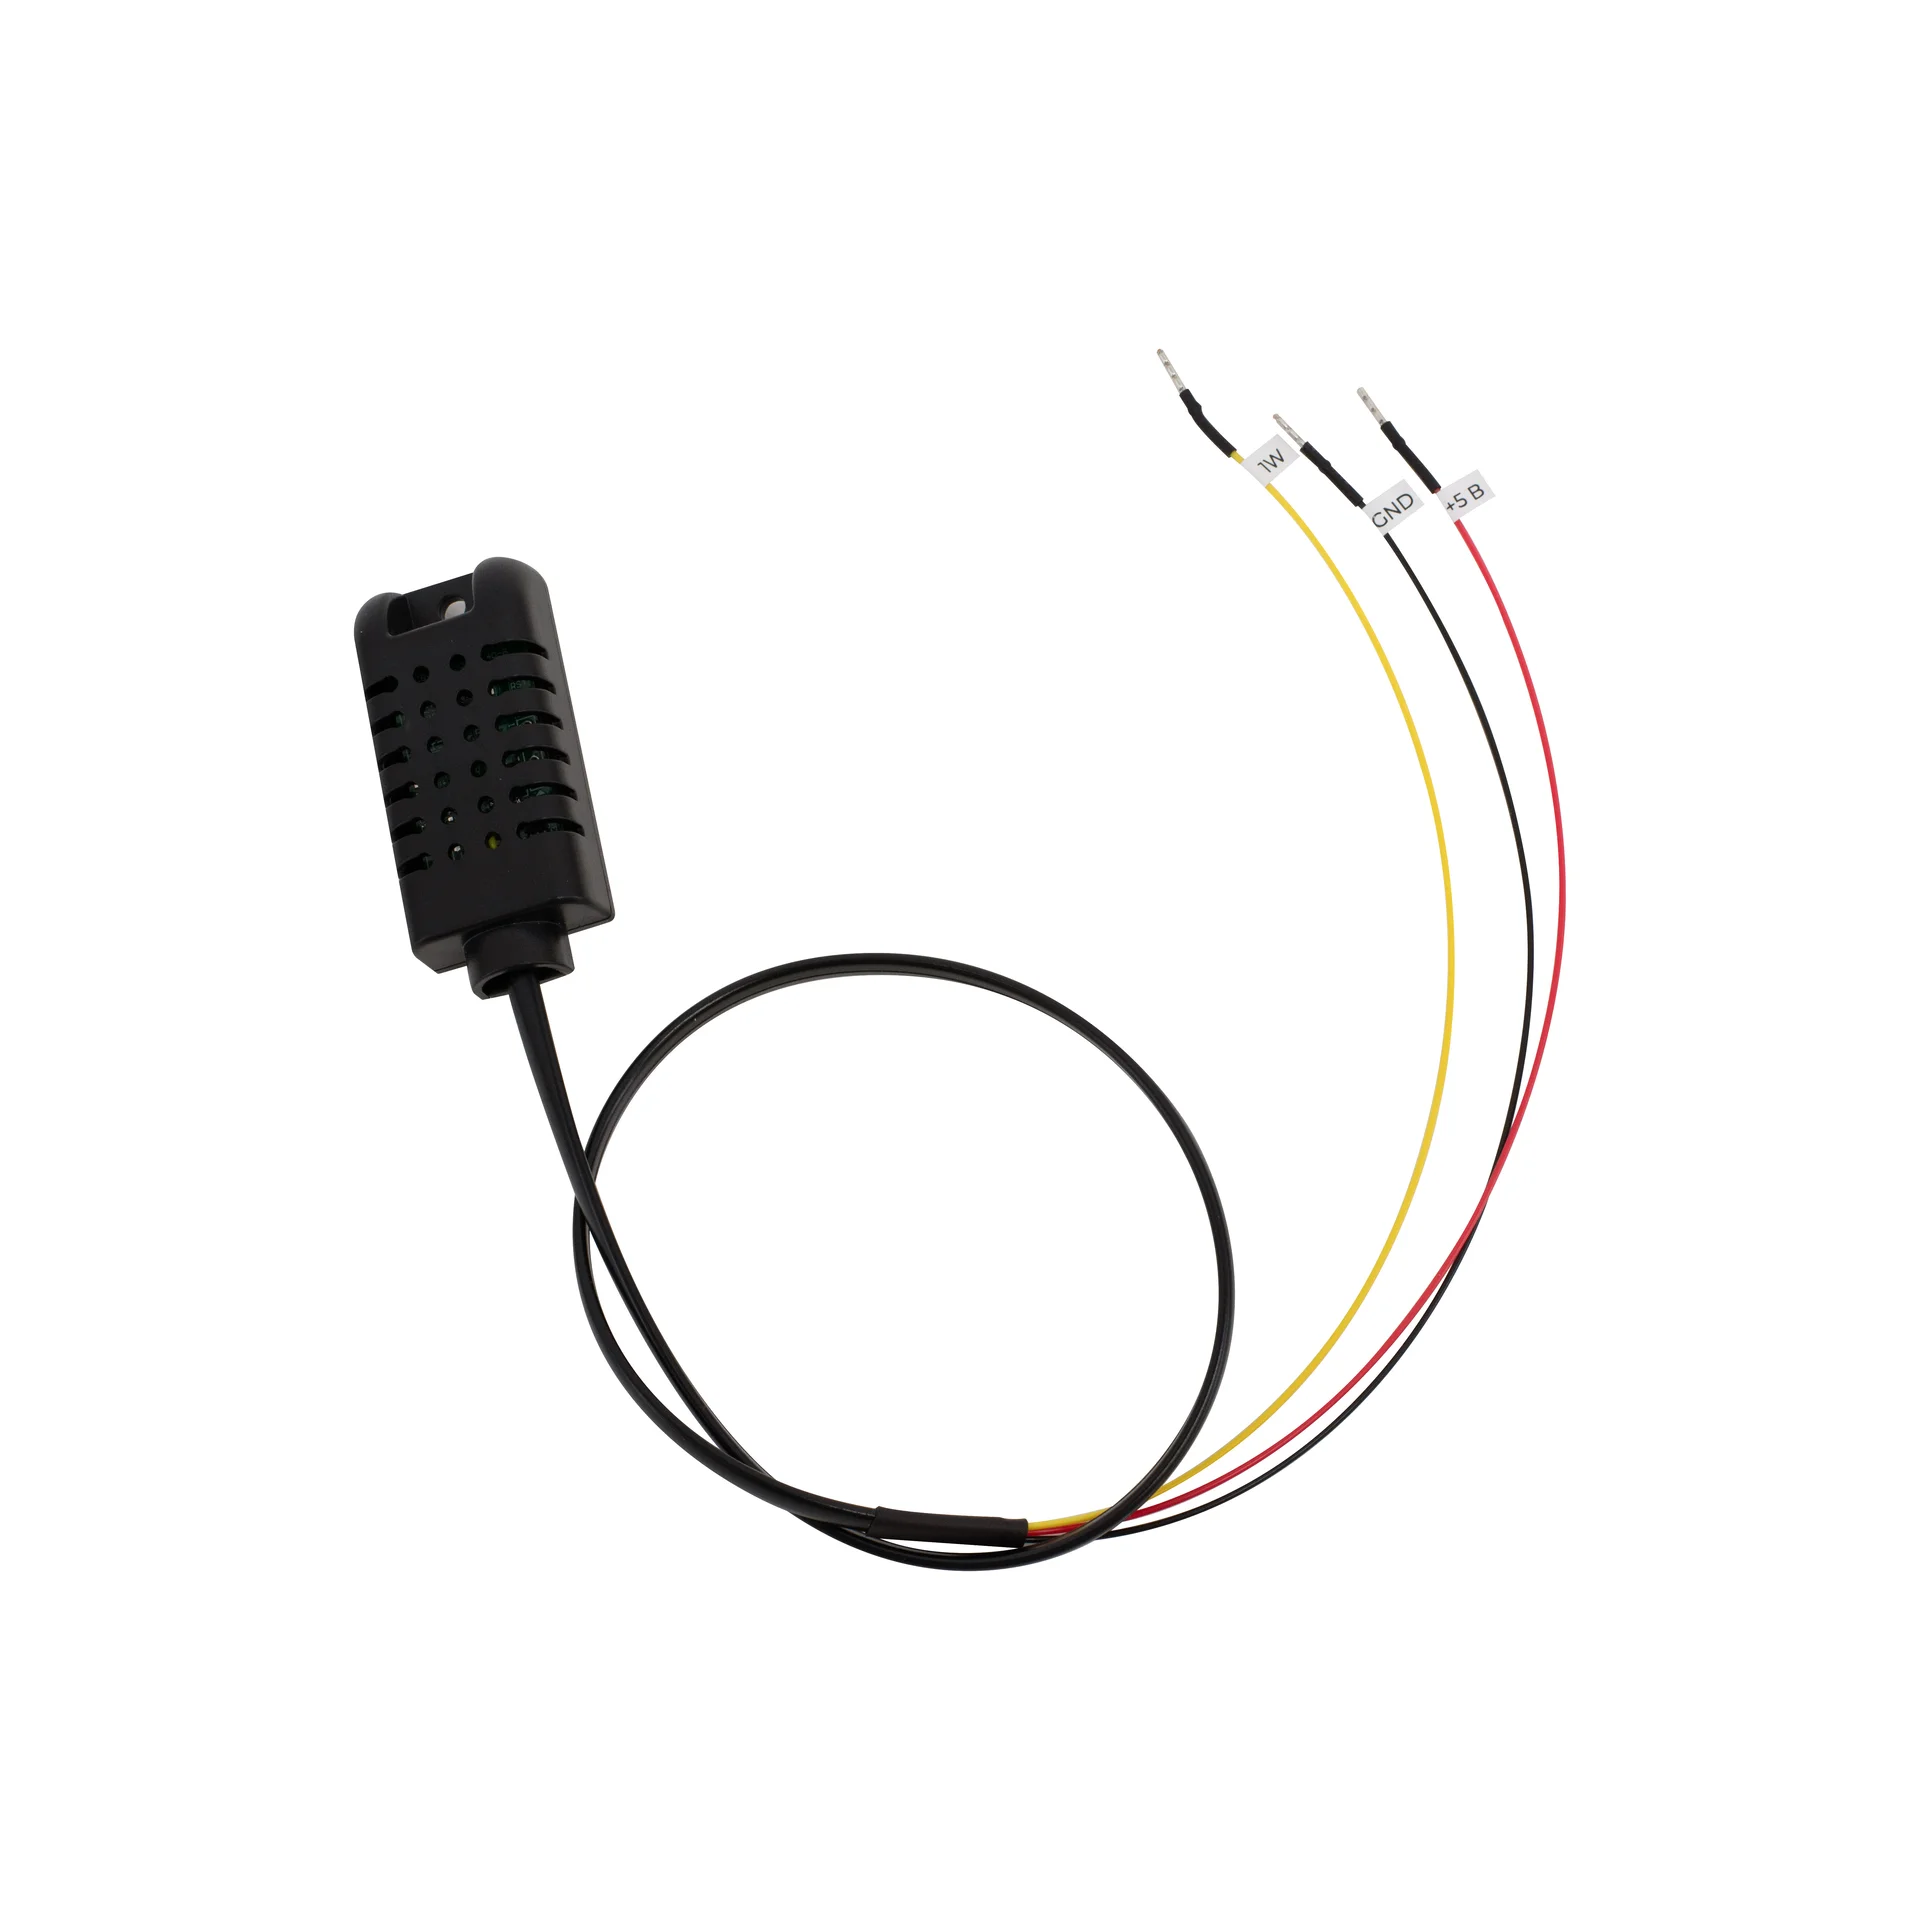 SNR-DHTS-0.5m - Датчик влажности и температуры 1-wire купить в Казани 	Технические характеристики:			Напряжение питания: +5 В;				Интерфейс передачи данных: 1-wire;				То